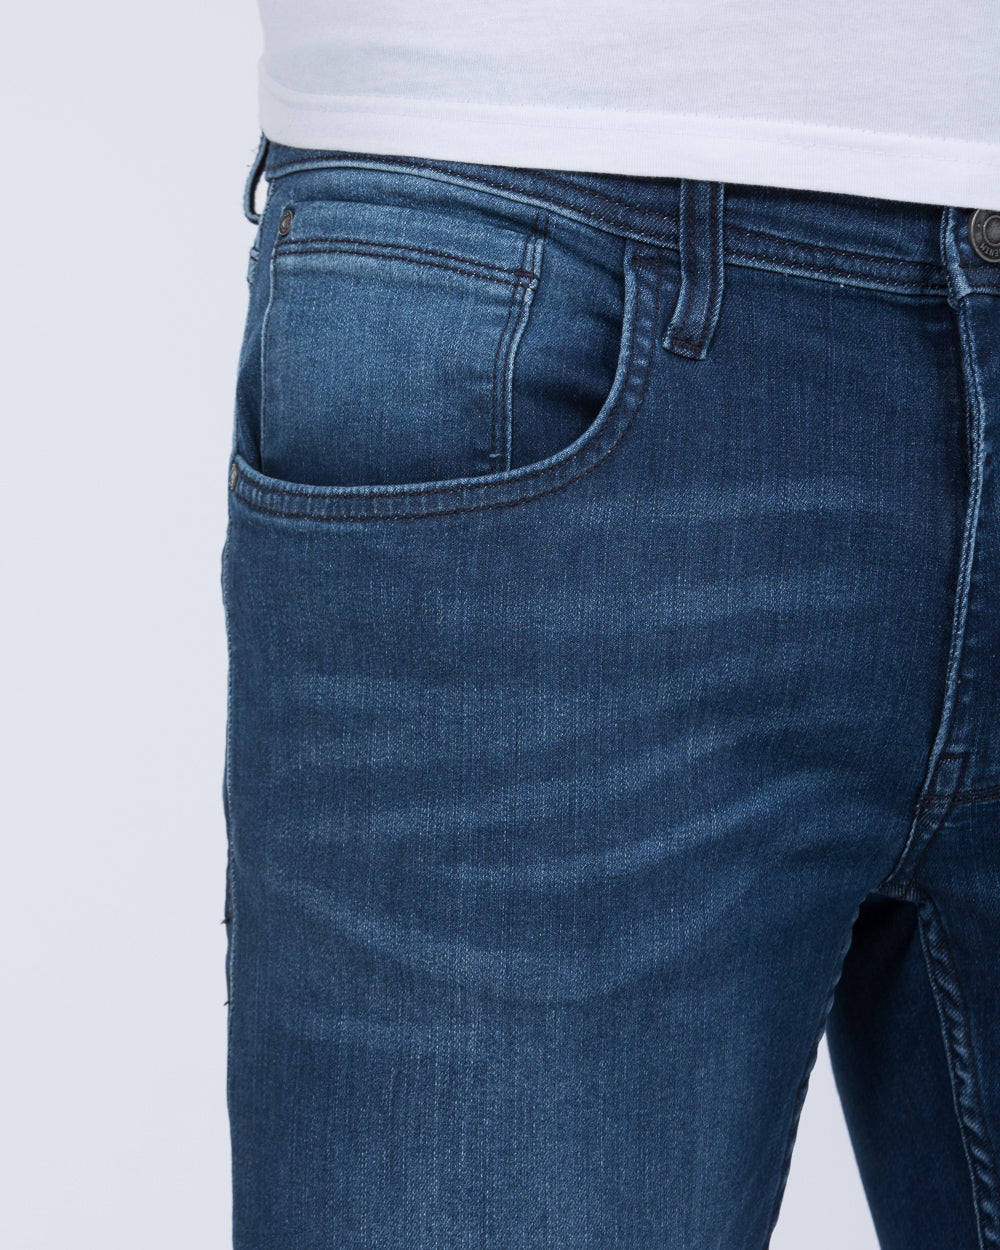 Blend Jet MultiFlex Slim Fit Tall Jeans (dark denim blue)